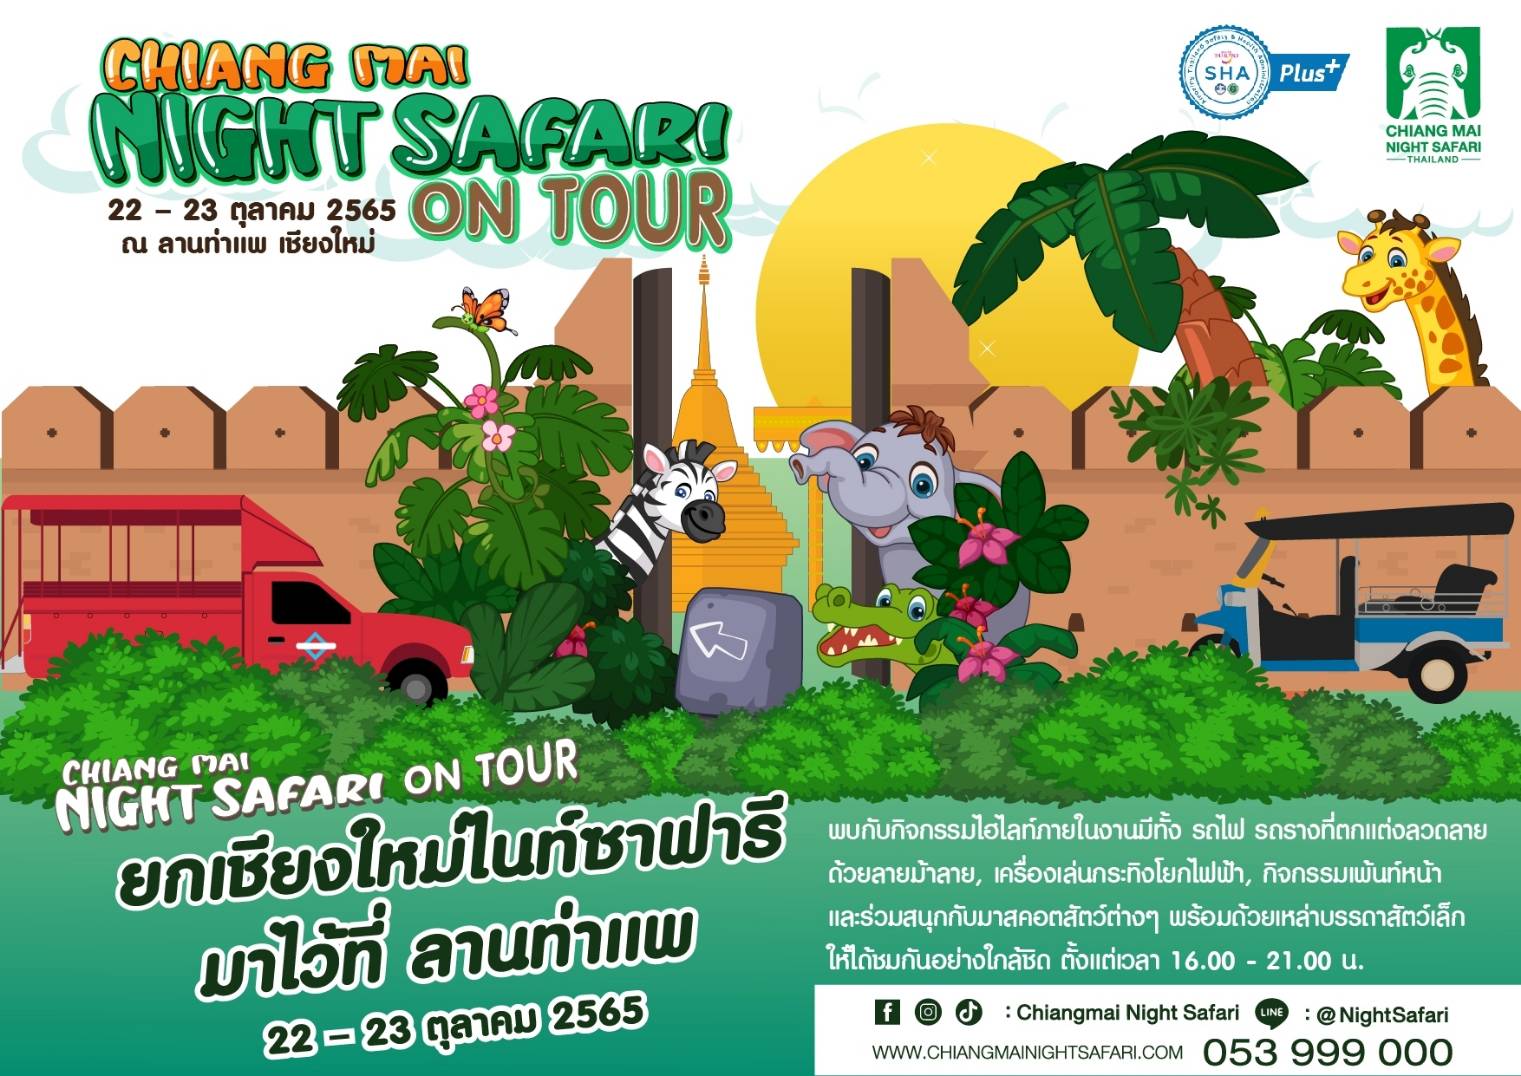 เชียงใหม่ไนท์ซาฟารี ชวนเที่ยว “Chiang Mai Night Safari on tour” ณ ลานท่าแพ วันที่ 22 – 23 ตุลาคม นี้